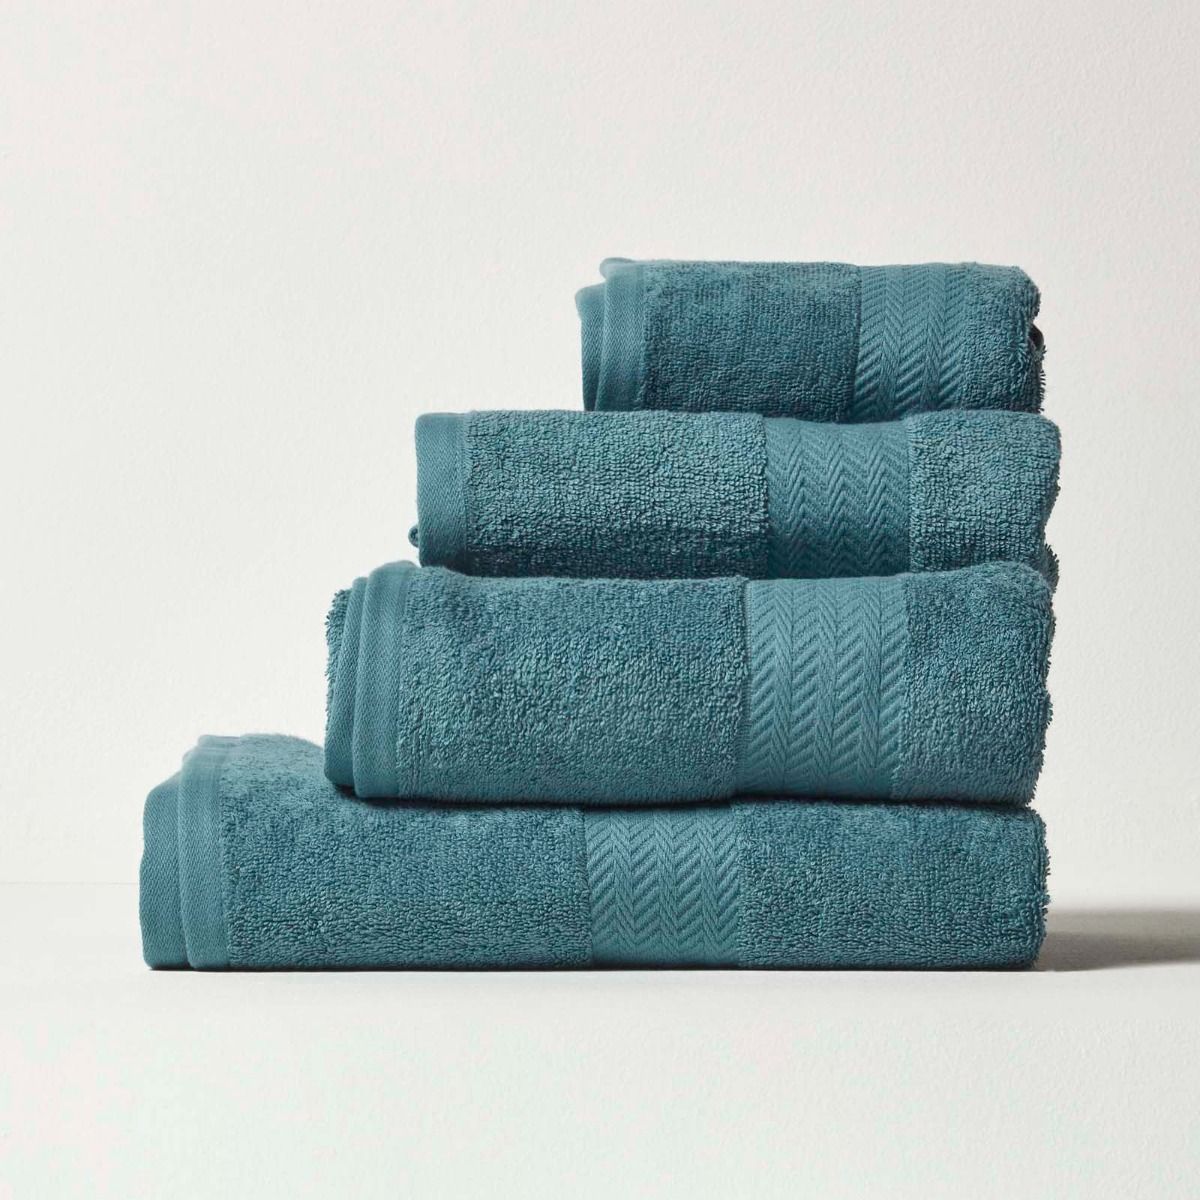 Handtuch Badelaken Badetuch 2017 Luxus Ägyptisch 100% Baumwolle Waschlappen 